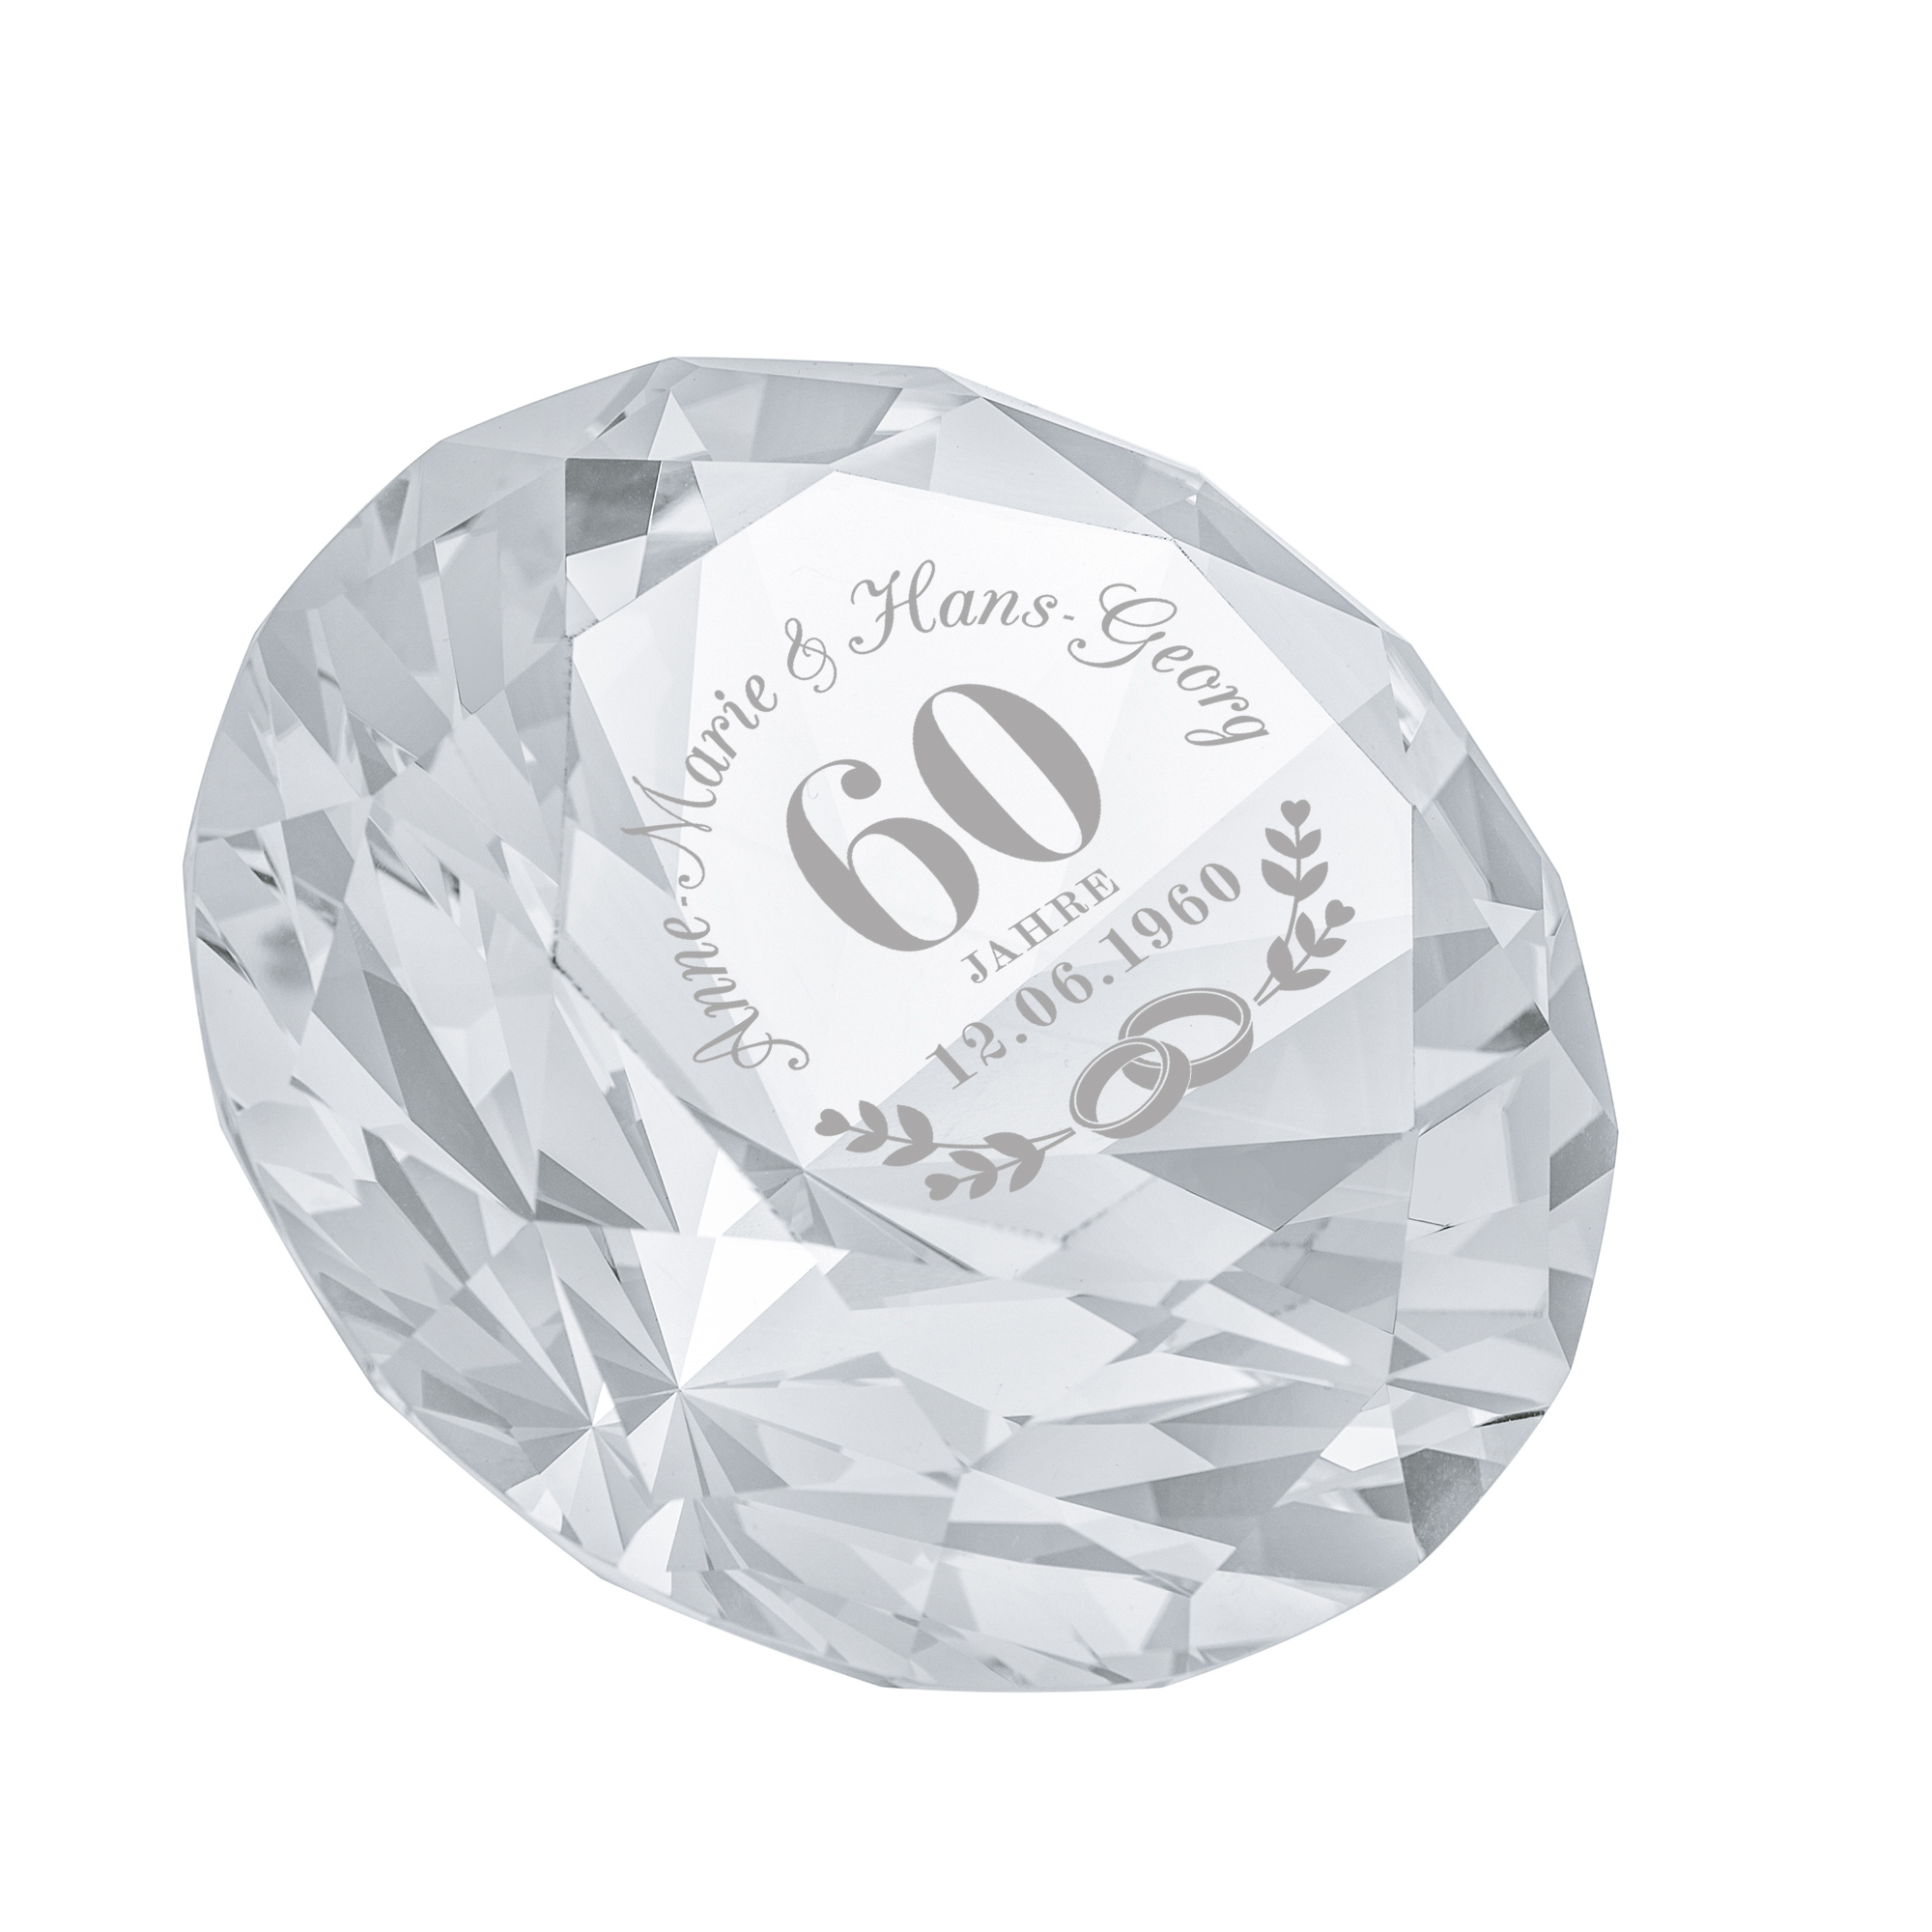 Diamant Kristall mit Gravur zur Diamantenen Hochzeit - Personalisiert